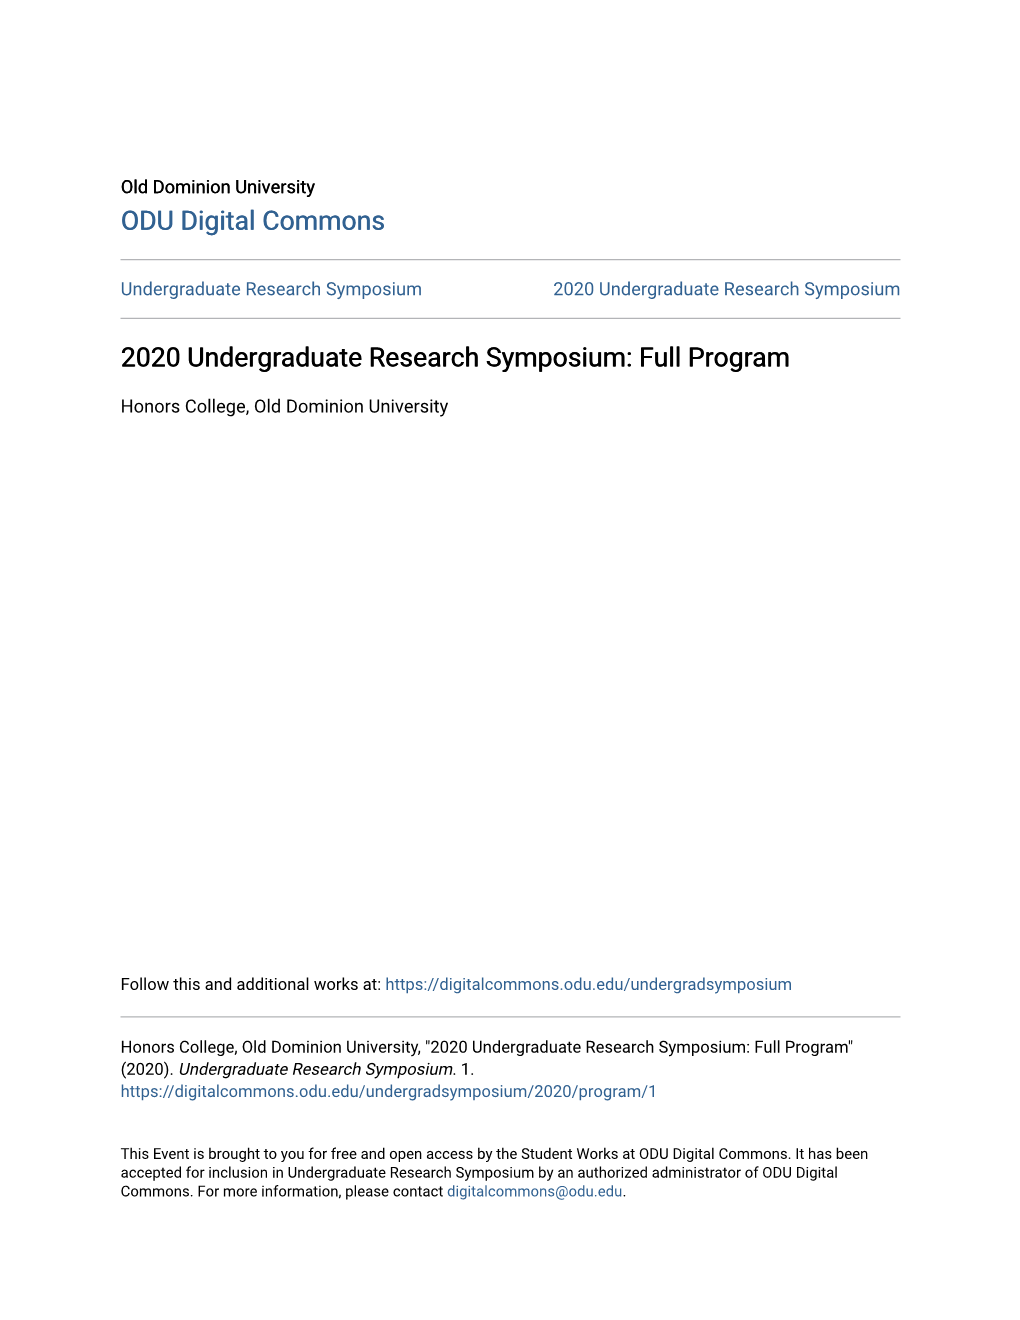 2020 Undergraduate Research Symposium: Full Program